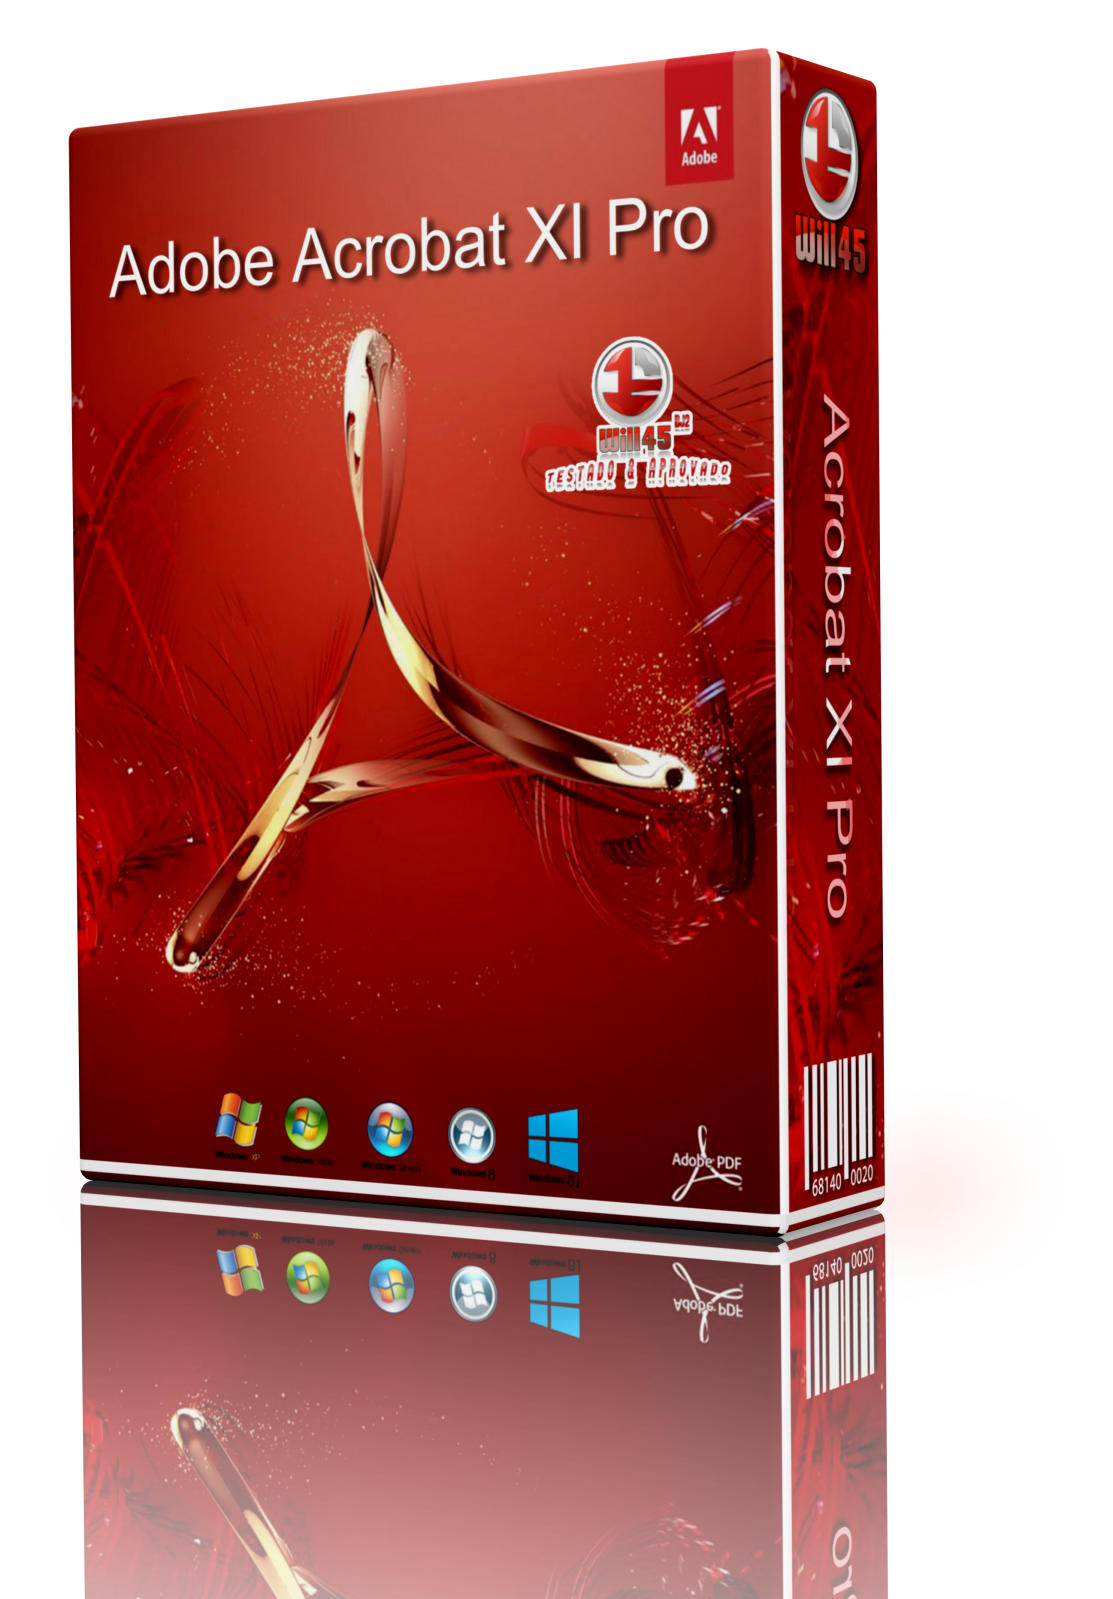 where to buy adobe acrobat xi pro